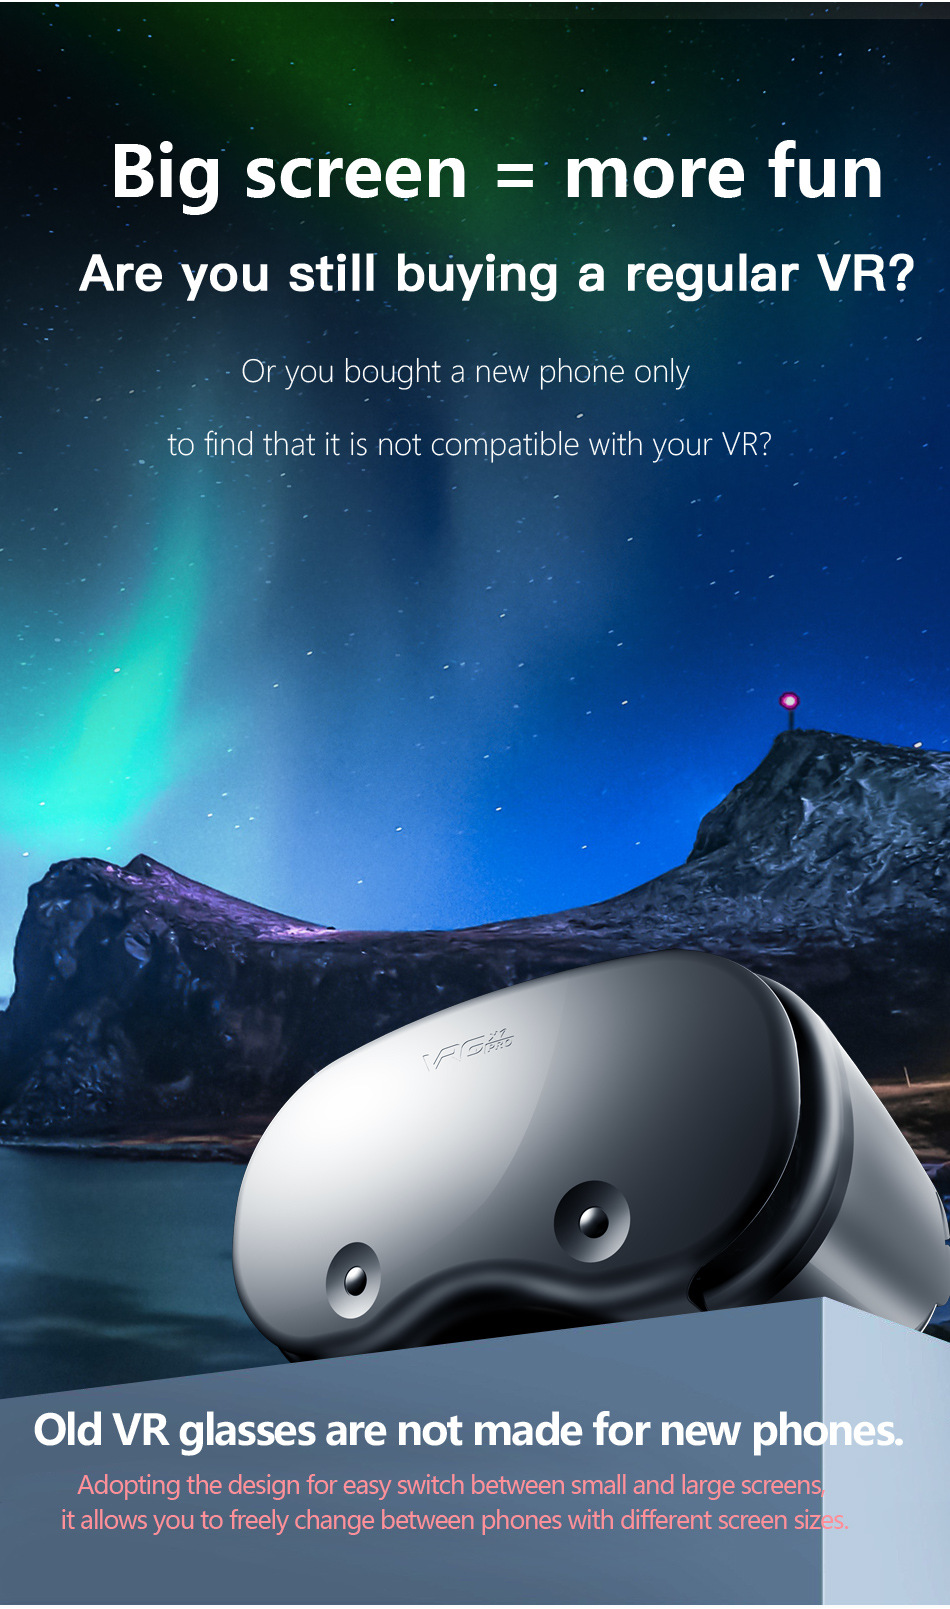 VRGPro X7 casco 3D occhiali VR occhiali 3D occhiali per realtà virtuale cuffie VR per Google cartone 5-7 'Mobile con scatola originale